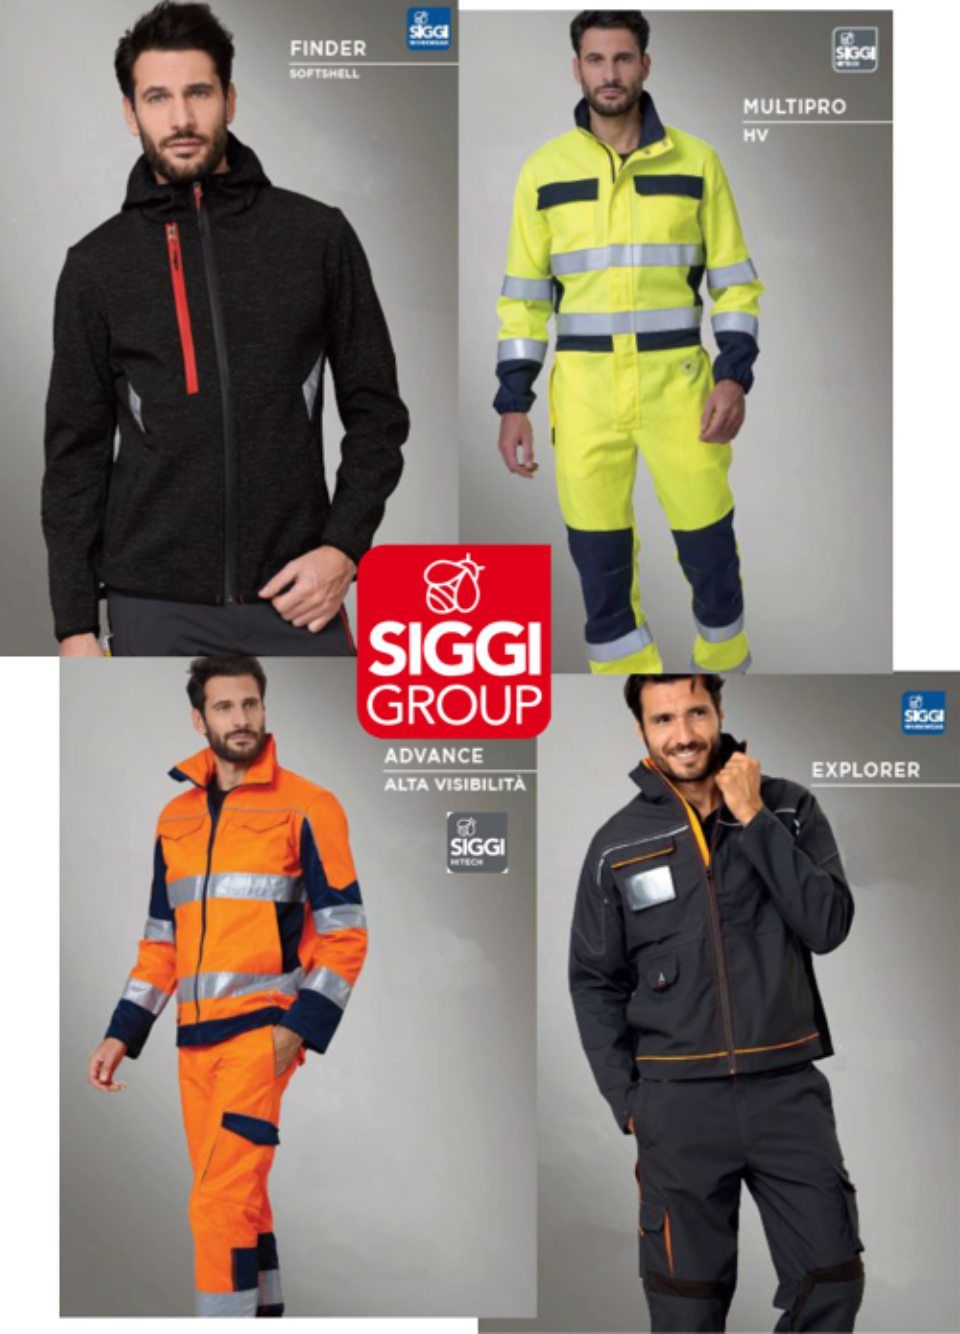 Siggi Group professional clothing